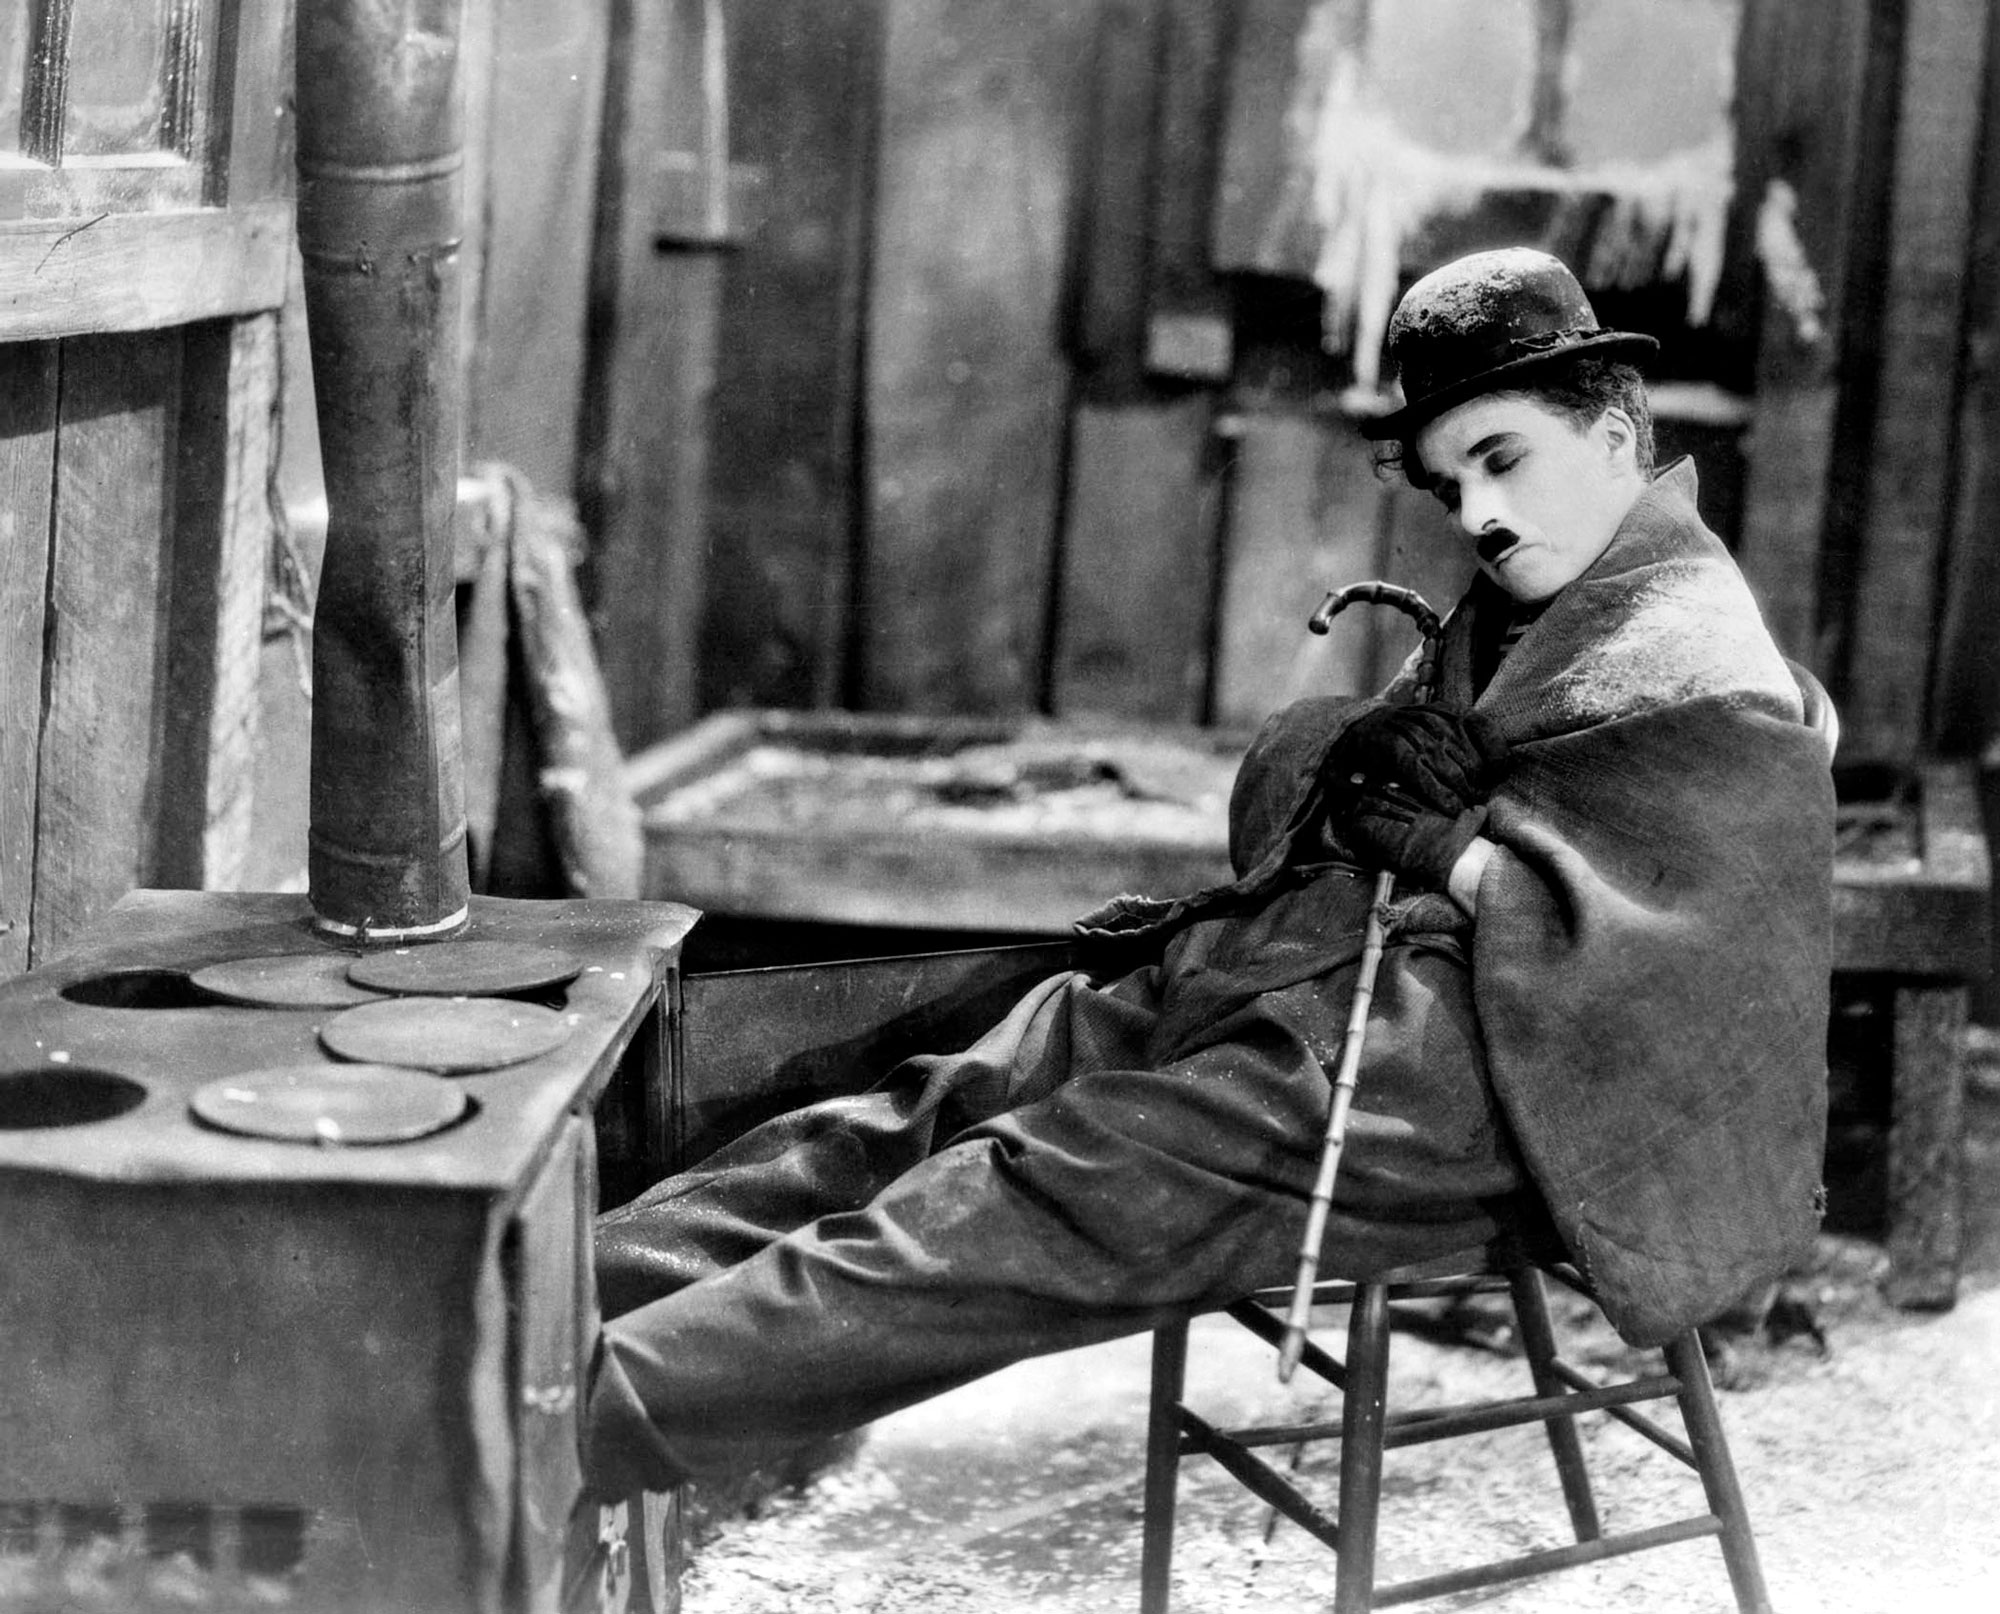 7 Art Cinema | Charlie Chaplin | Le Kid - The Kid (1921), L'Opinion publique - A Woman of Paris (1923), La Ruée vers l'or - The Gold Rush (1925), Le Cirque - The Circus (1928), Les Lumieres de la ville - City Lights (1931), Les Temps modernes - Modern Times (1936), Le Dictateur - The Great Dictator (1940), Monsieur Verdoux - Monsieur Verdoux (1947), Les Feux de la rampe - Limelight (1952), Un roi  New York - A King in New York (1957), La Comtesse de Hong-Kong - A Countess from Hong Kong (1967) | United Artists, Keystone Film Company, Essanay Film Manufacturing Compagny, Mutual | Courts Métrages, Long métrages | Réalisateur de cinéma, Producteur, Metteur en Scene, Compositeur, Scénariste, Acteur | Charlie Chaplin 1889 - 1977 | Photographie